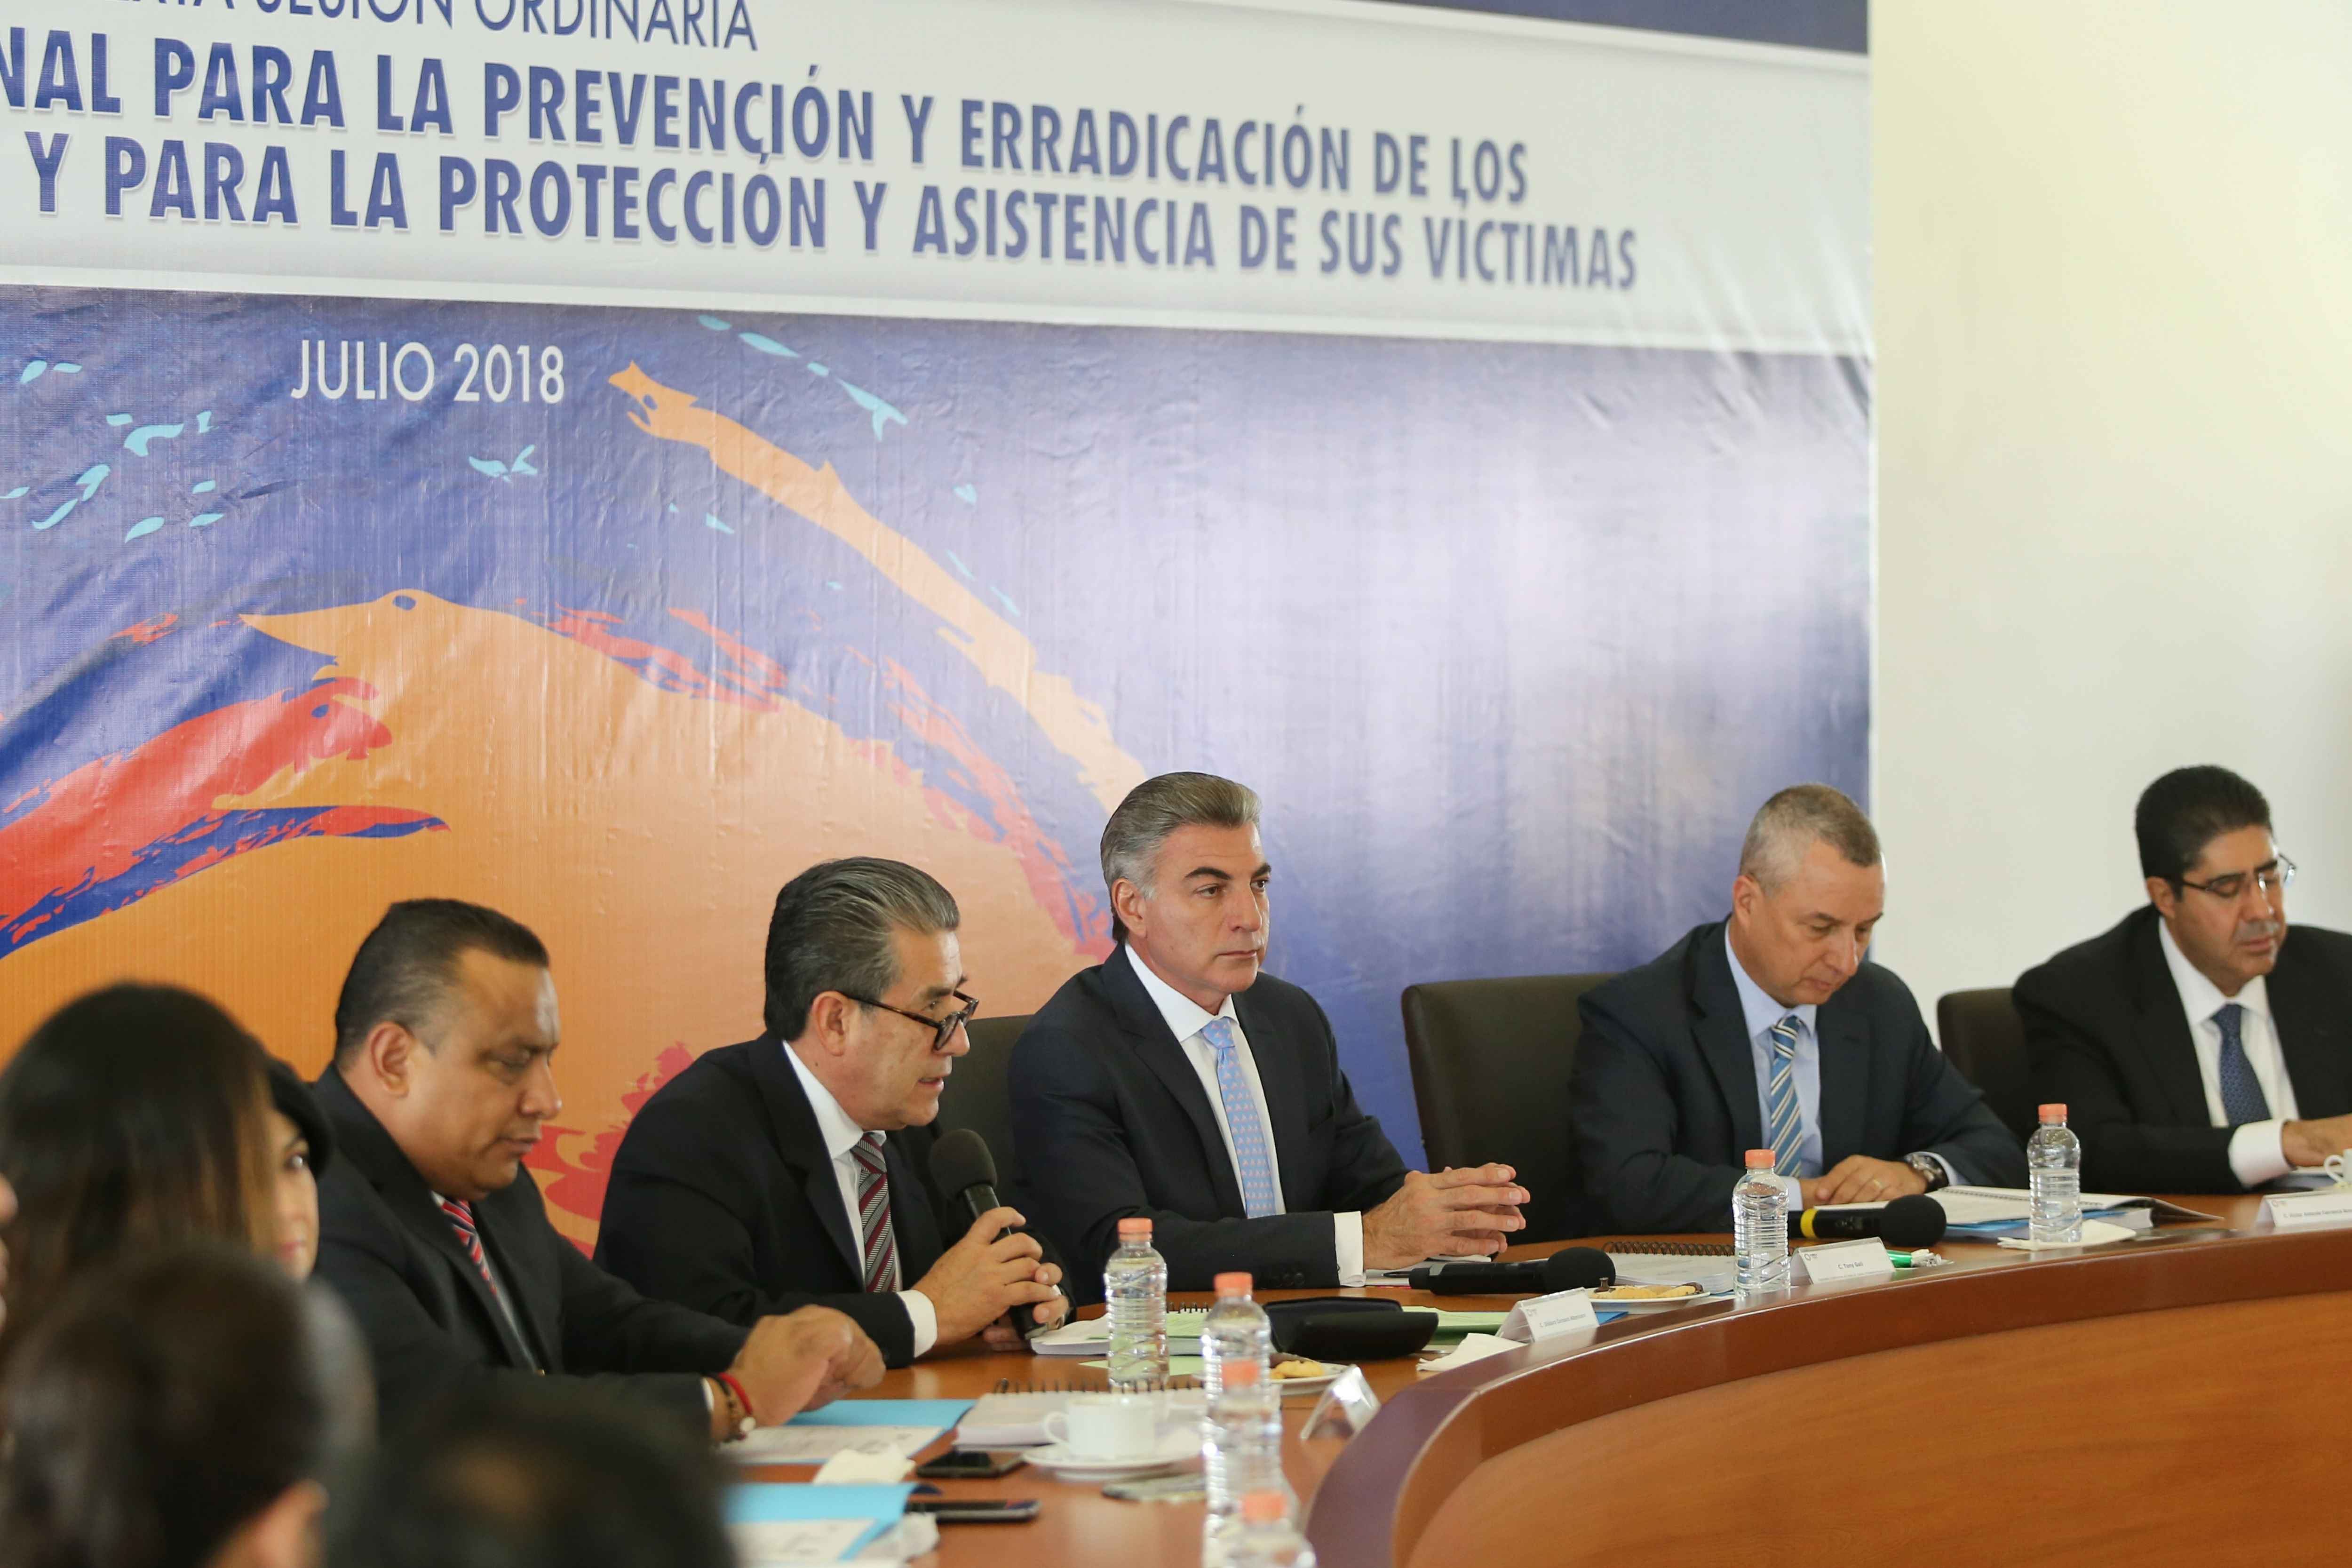 Puebla, CDMX y 2 estados más se unen contra trata de personas